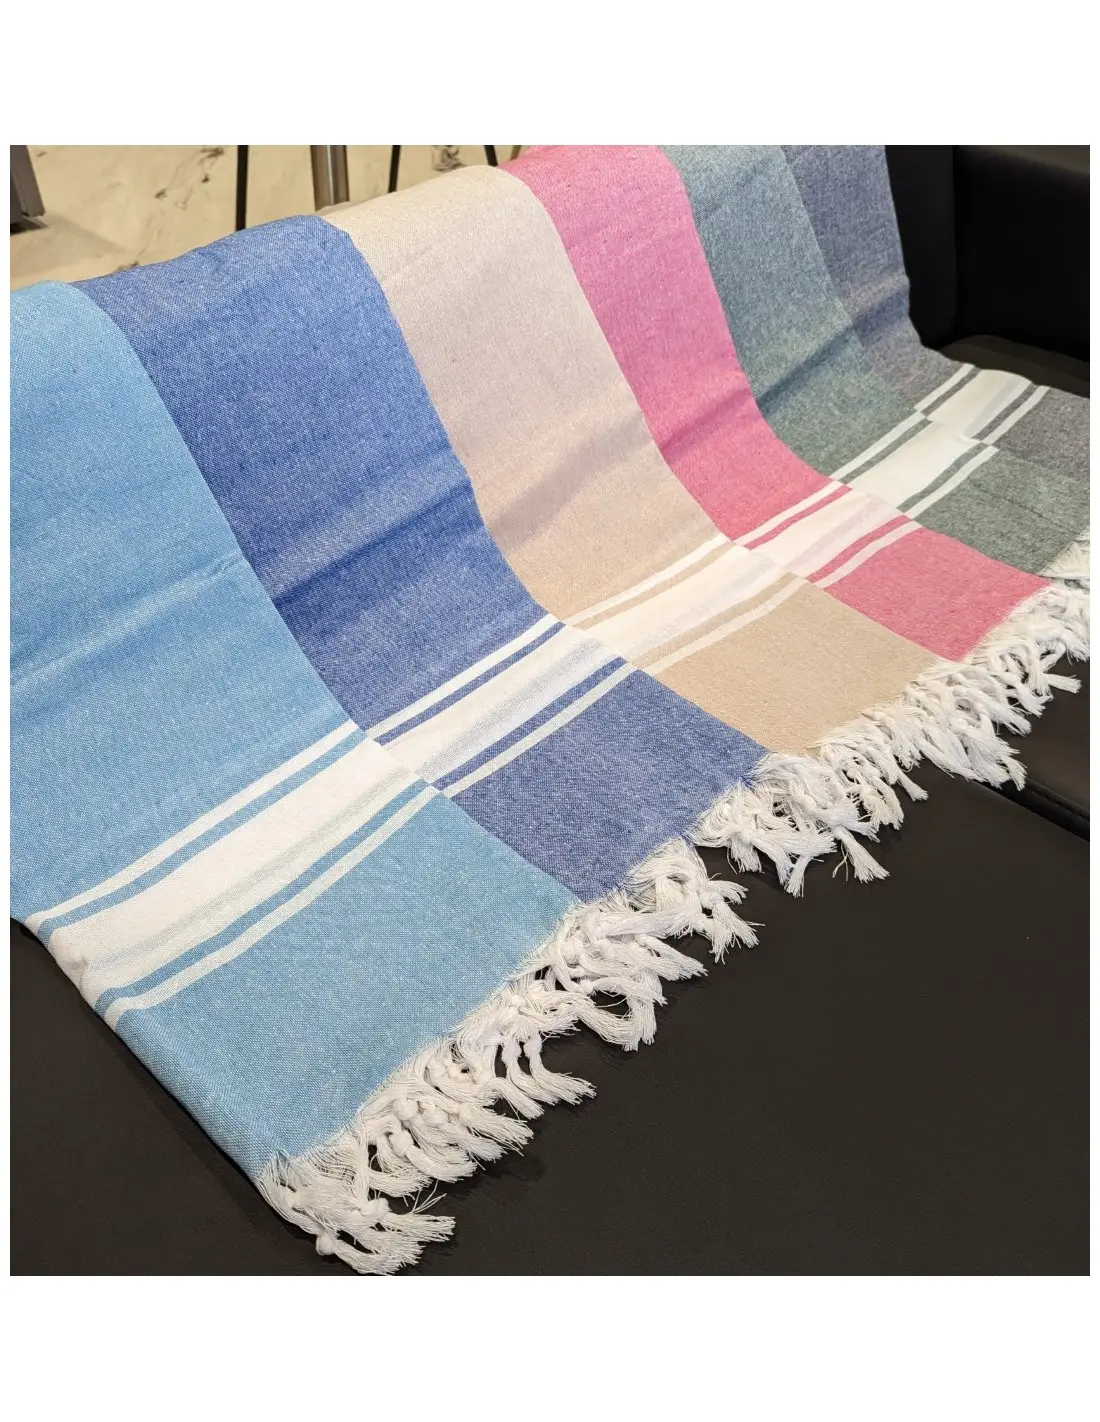 Asciugamano personalizzato in cotone riciclato turco a buon mercato promozionale hammam peshtemal economico eco responsabile regalo personalizzato